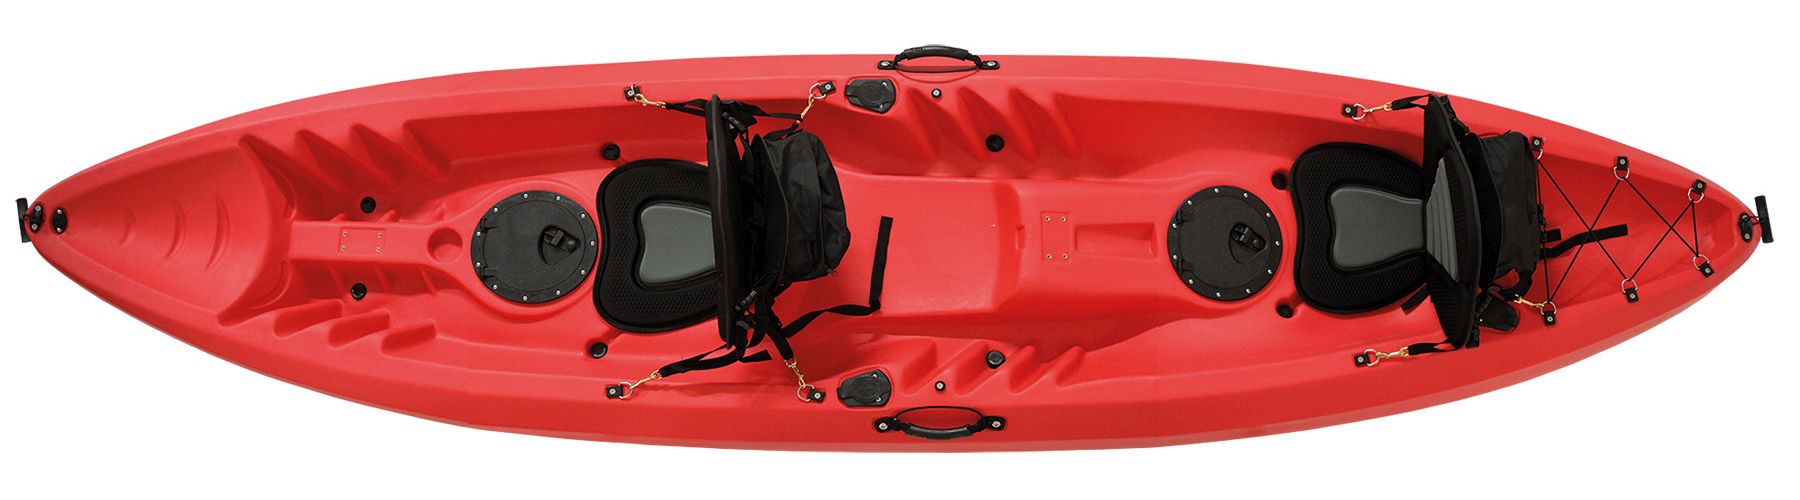 POFET 2pcs 140cm 55inch Kayak Paddelleine Angelrute Coiled Cord Holder Kajakfahren Kanufahren Bootfahren Surfzubehör